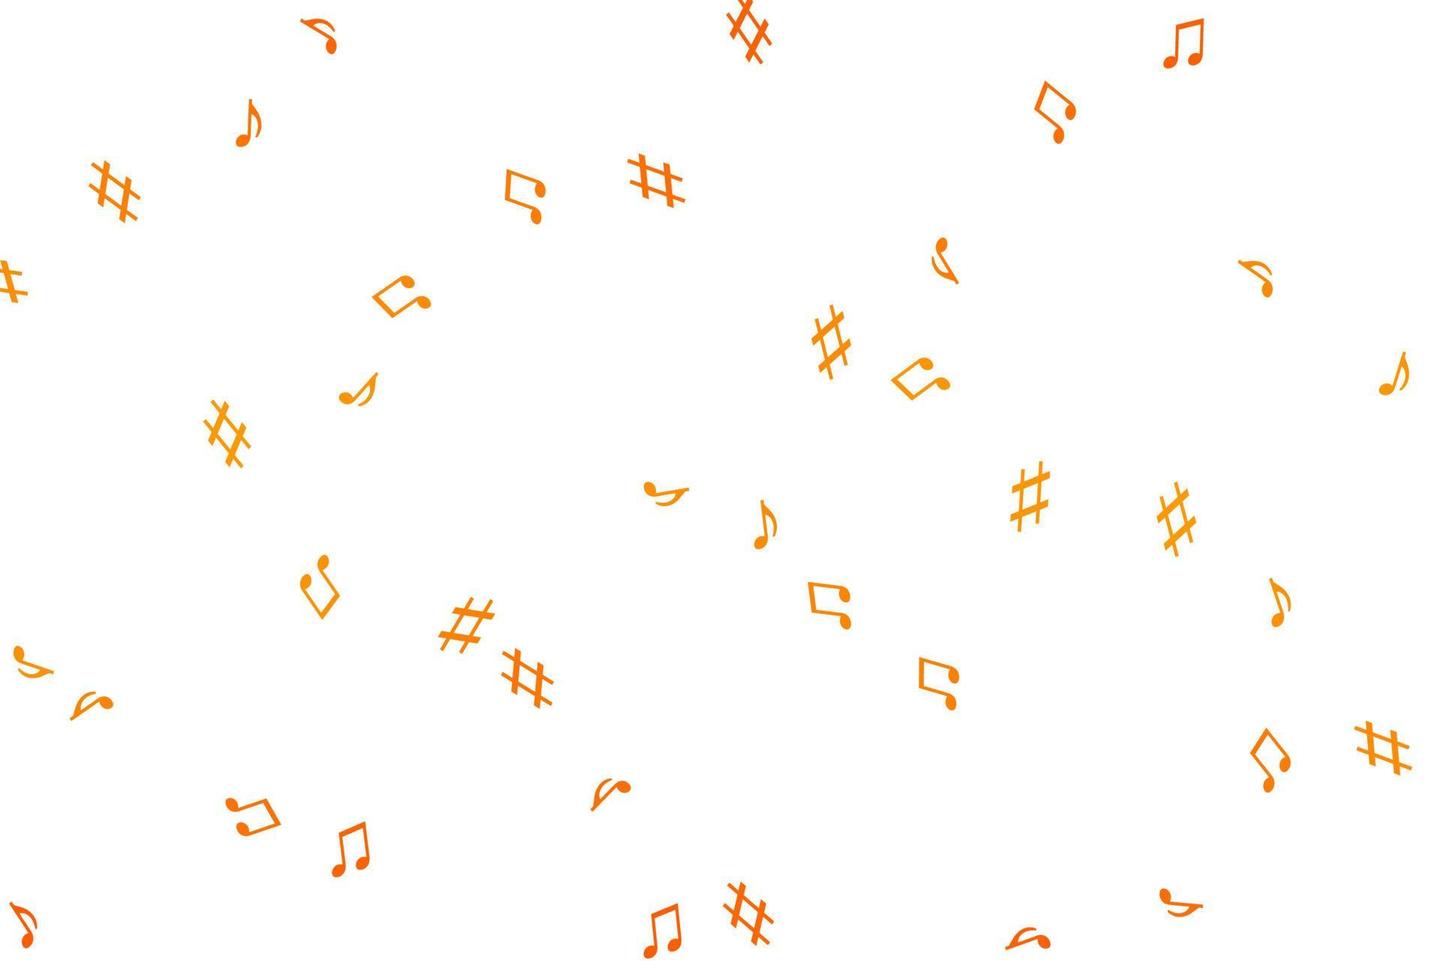 modèle vectoriel orange clair avec des symboles musicaux.